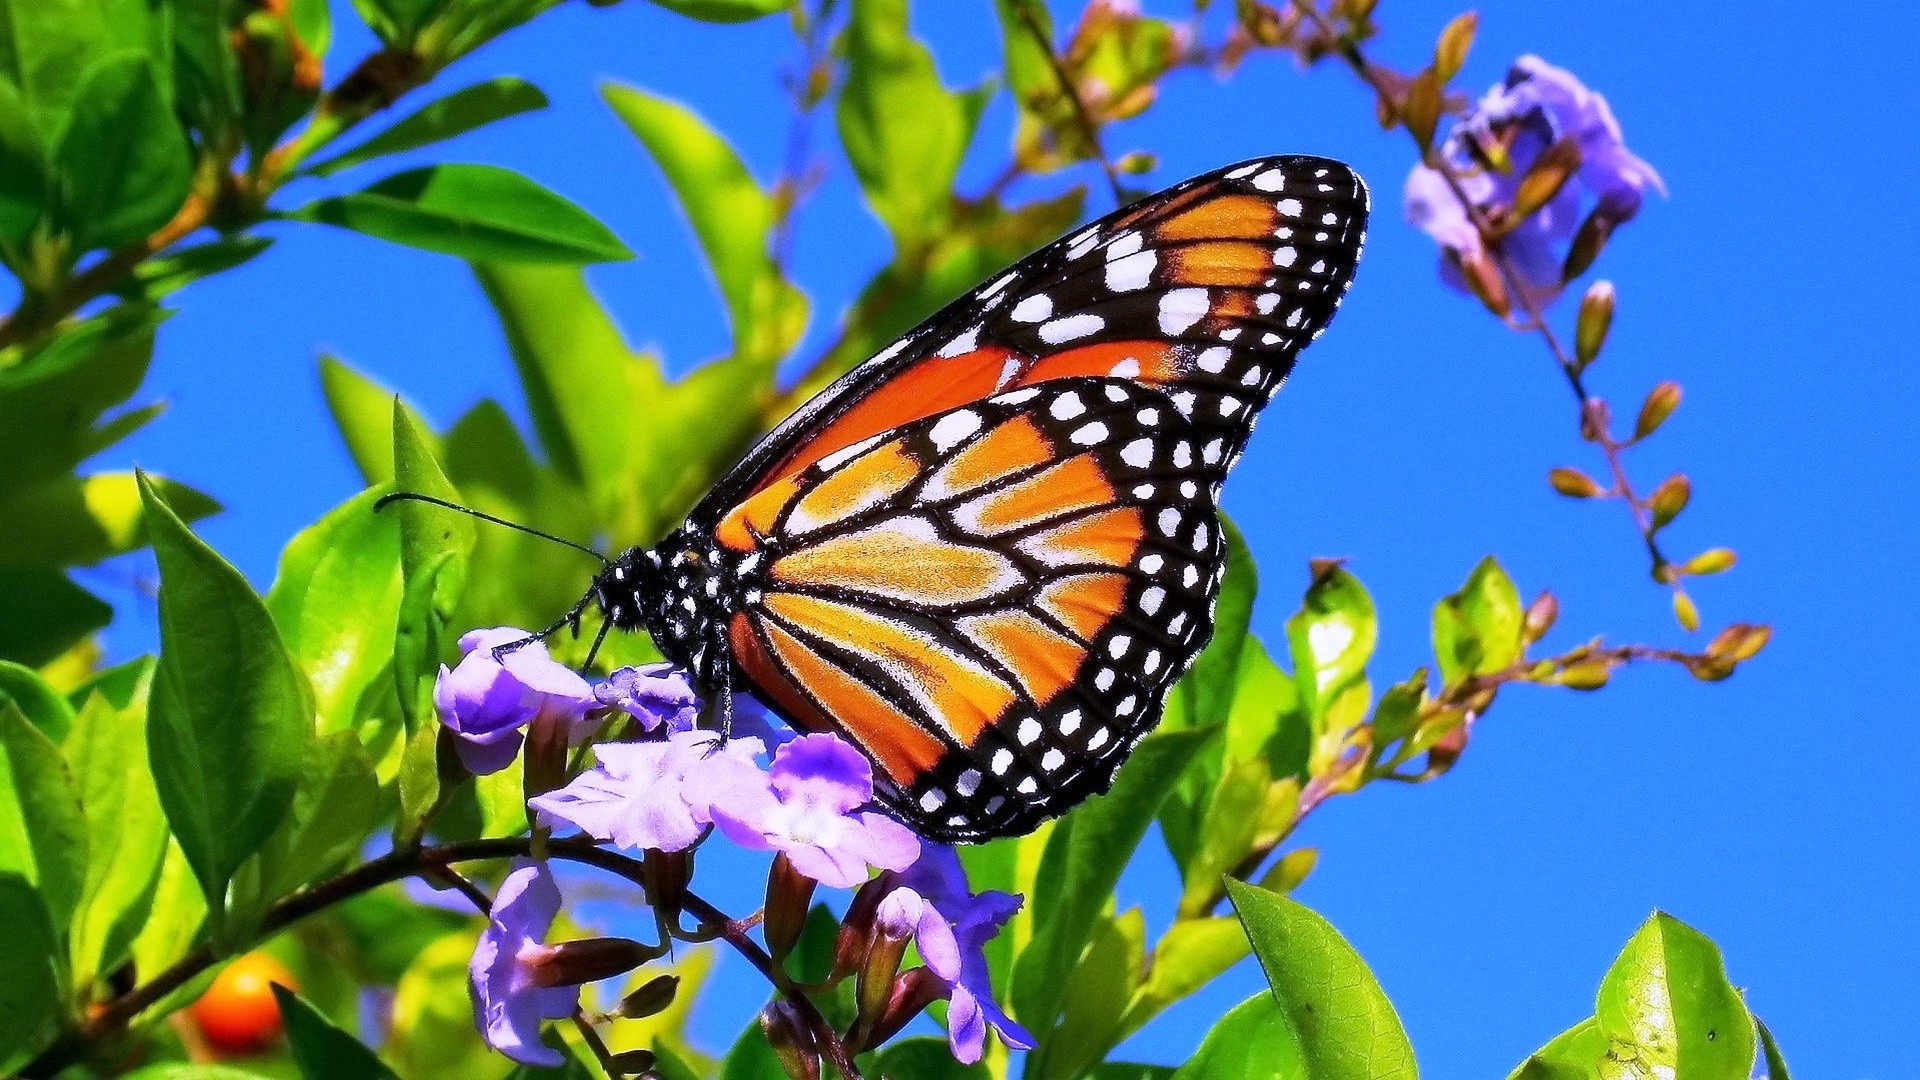 Beautiful Butterfly On Flower Wallpaper - Butterfly Sitting On Flower - HD Wallpaper 